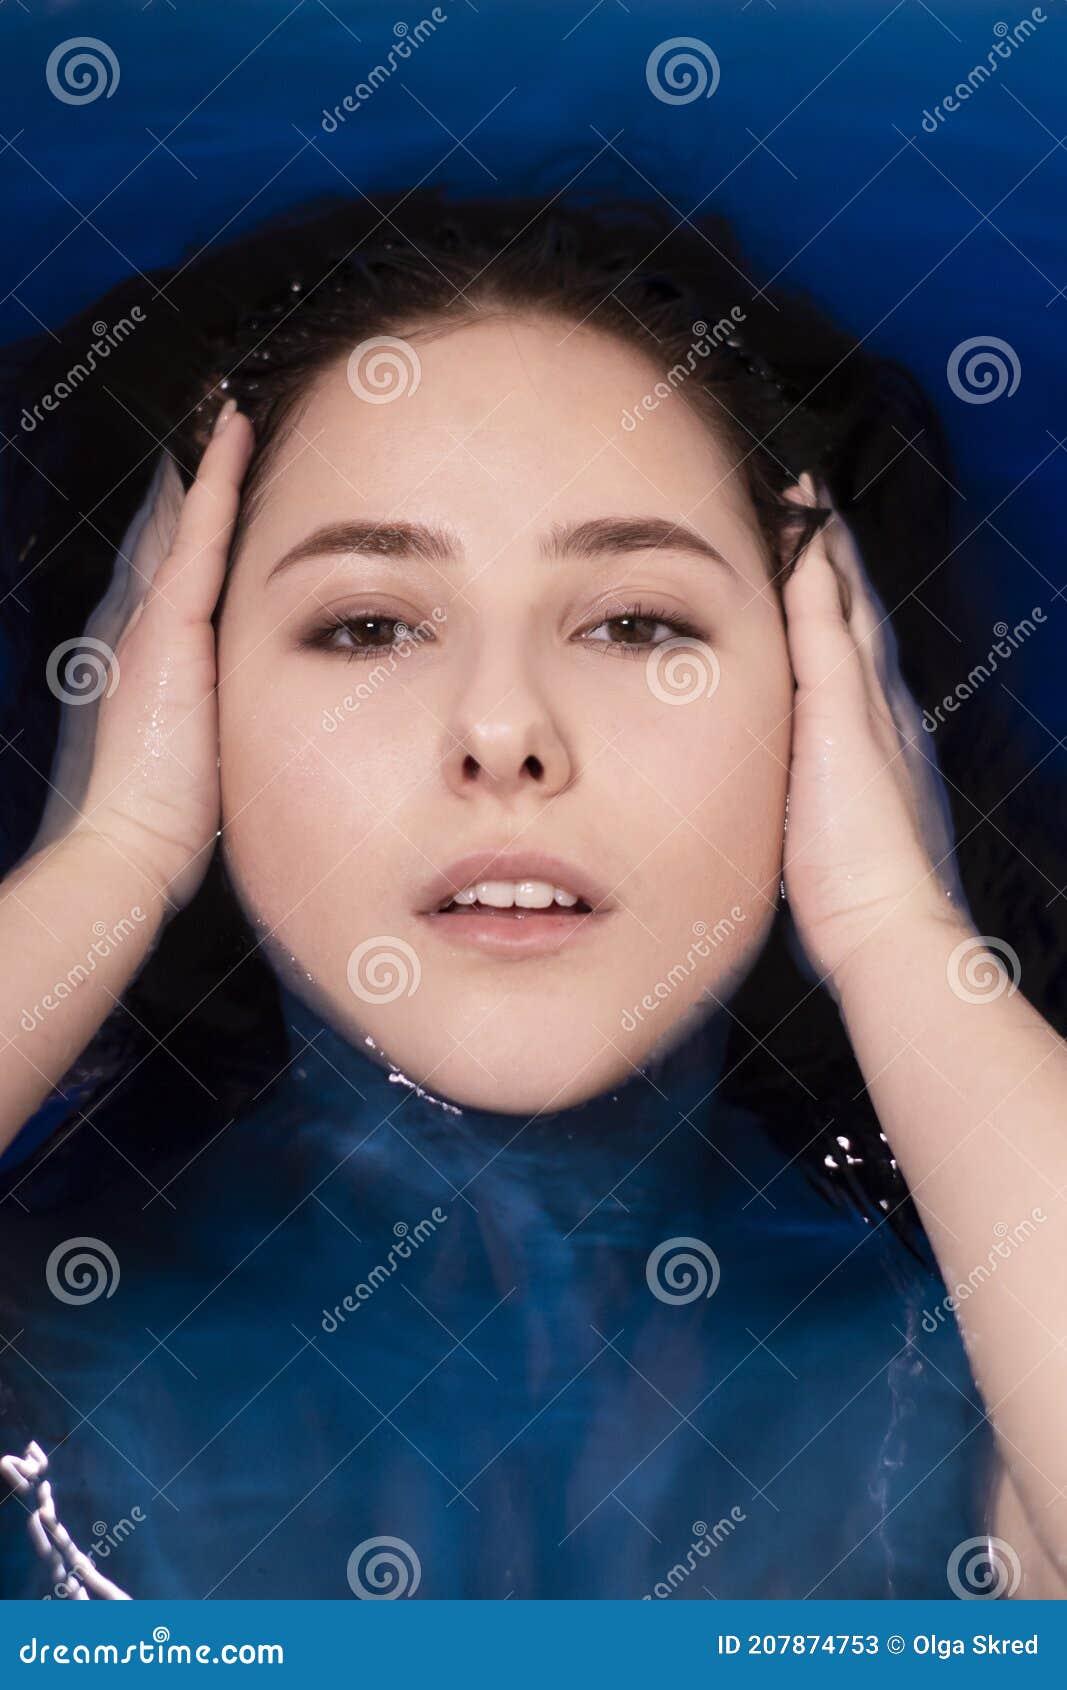 浅褐色美女裸身蓝色液体肖像. 在浴缸里用彩水. 溺水的女孩 库存照片 - 图片 包括有 液体, 死亡: 207879128